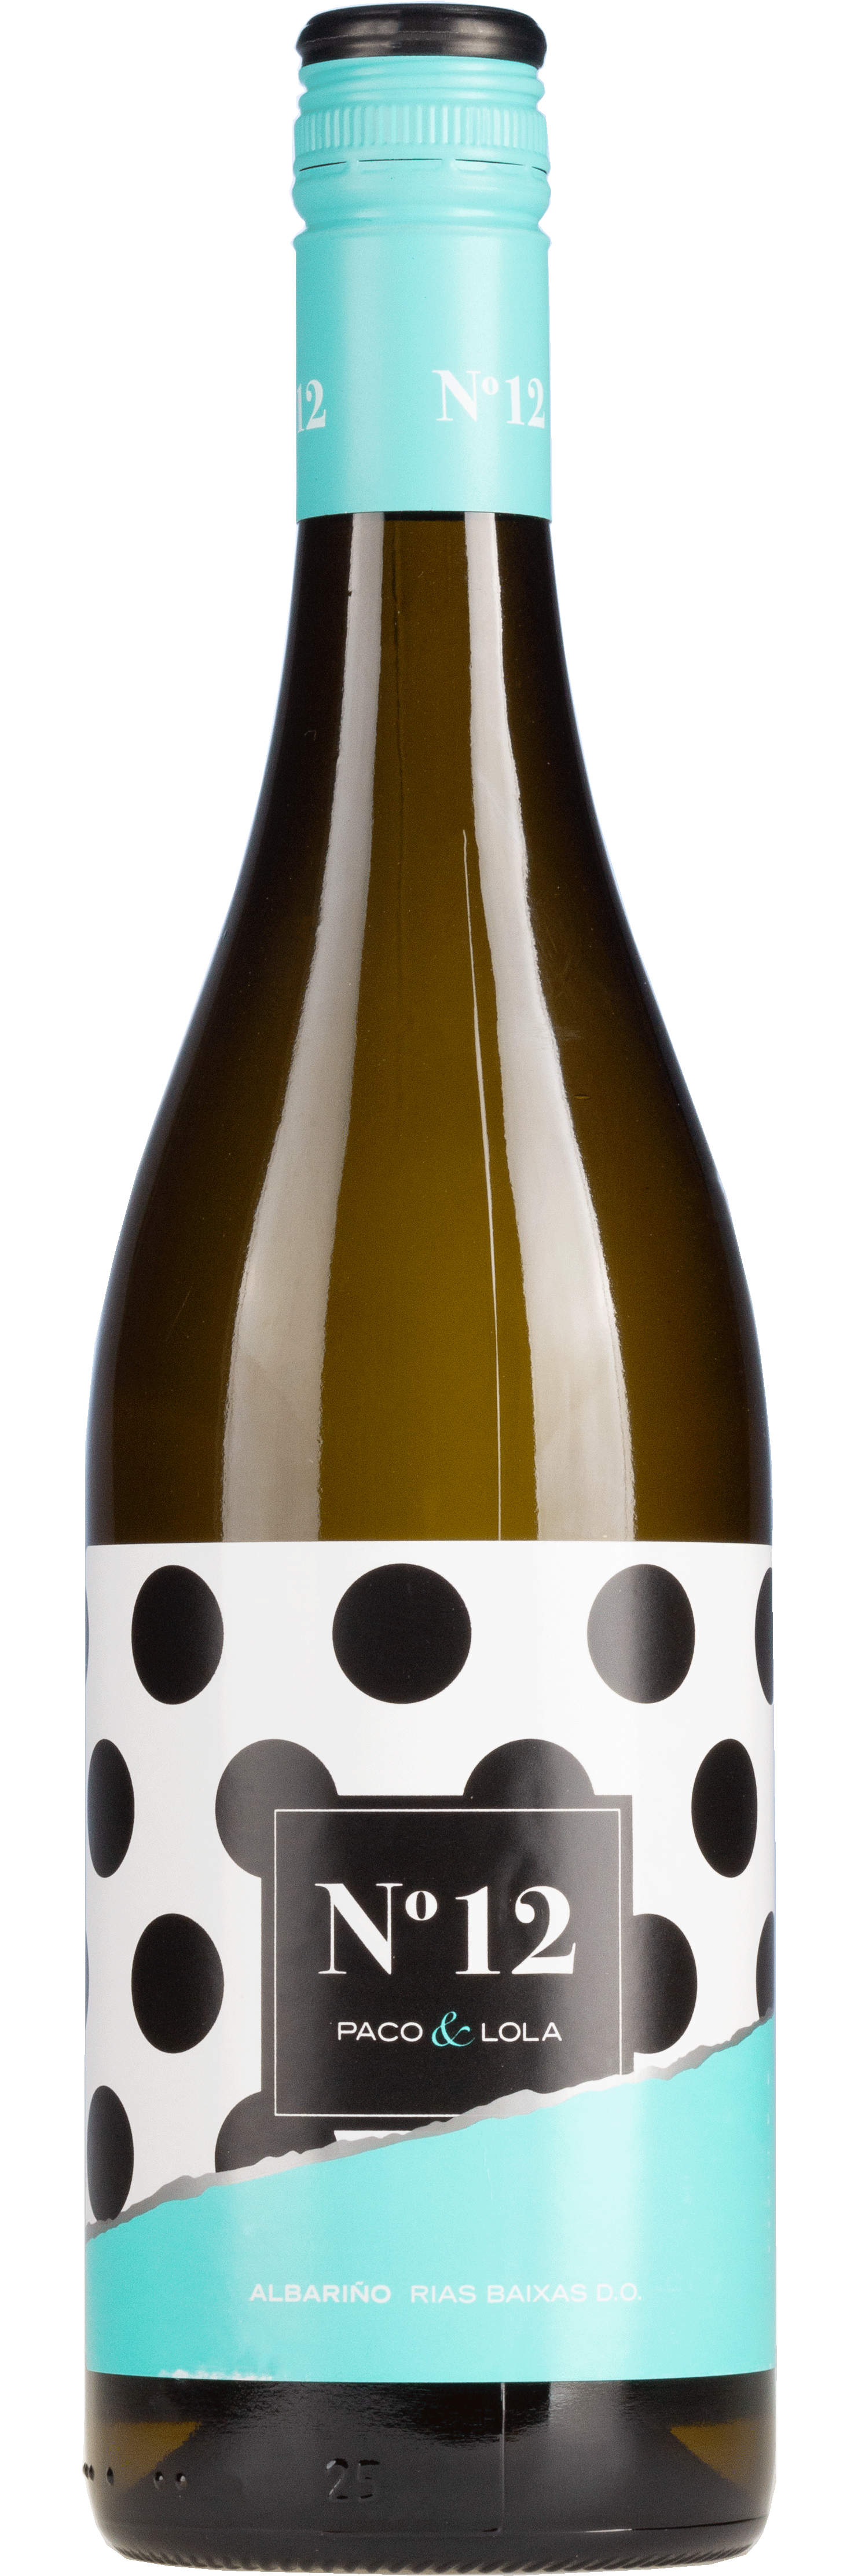 Paco & Lola N°12 - Rias Baixas - Weißwein trocken 0,75l - 12 %vol.